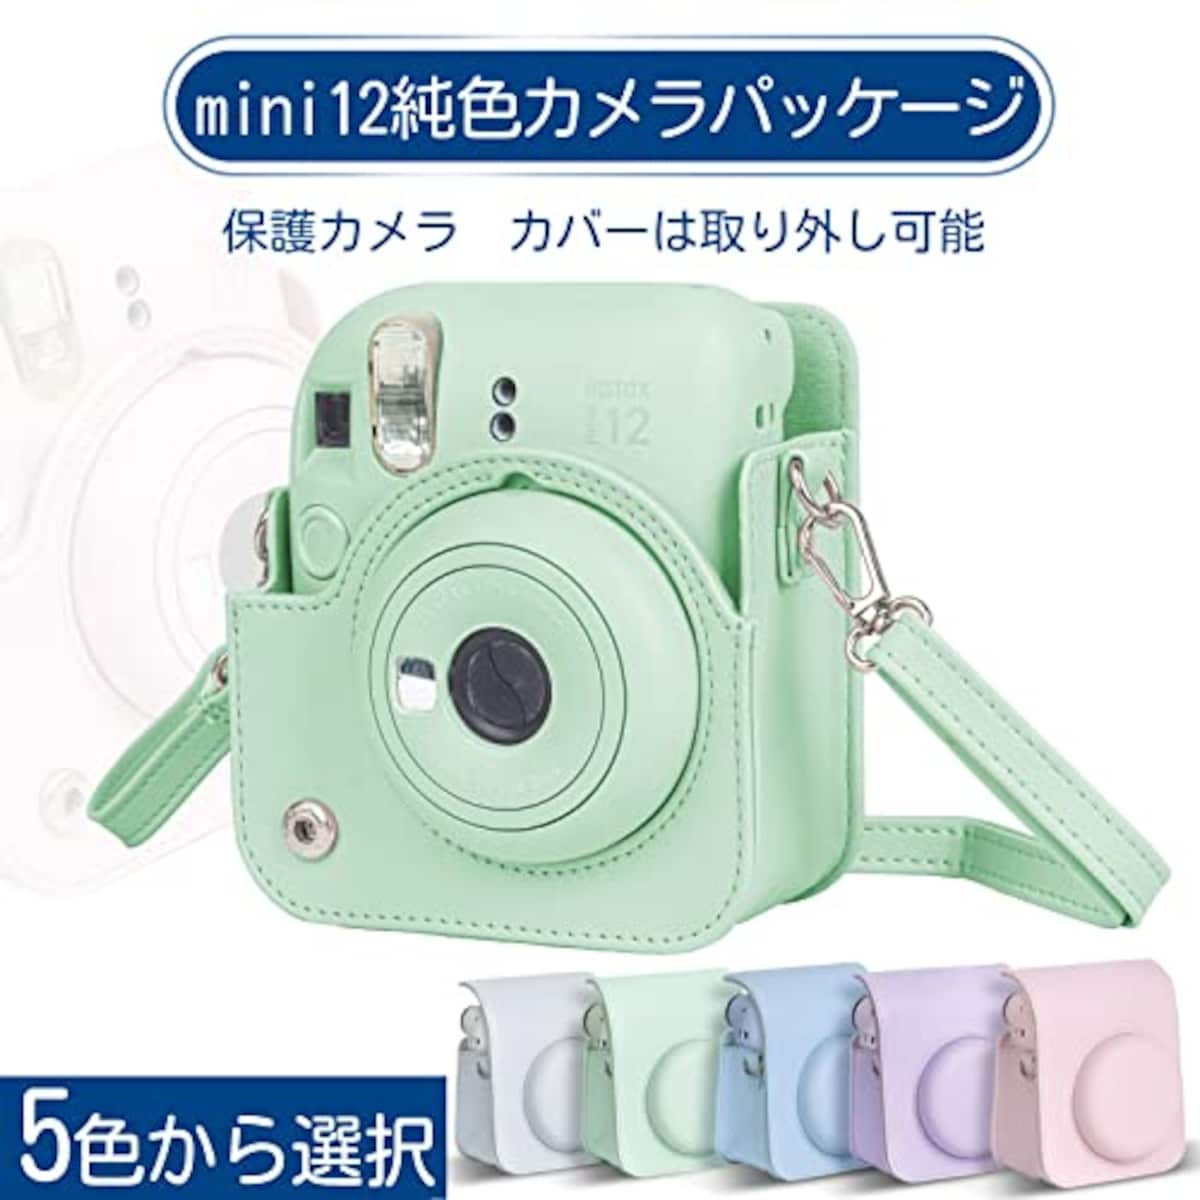  チェキケース instax mini 12用 カメラケース mini12 チェキ カバー Fujifilm チェキ ケース 新モデル 全面保護 傷つけ防止 携帯便利 ショルダーストラップ付き PUレザー (グリーン)画像4 